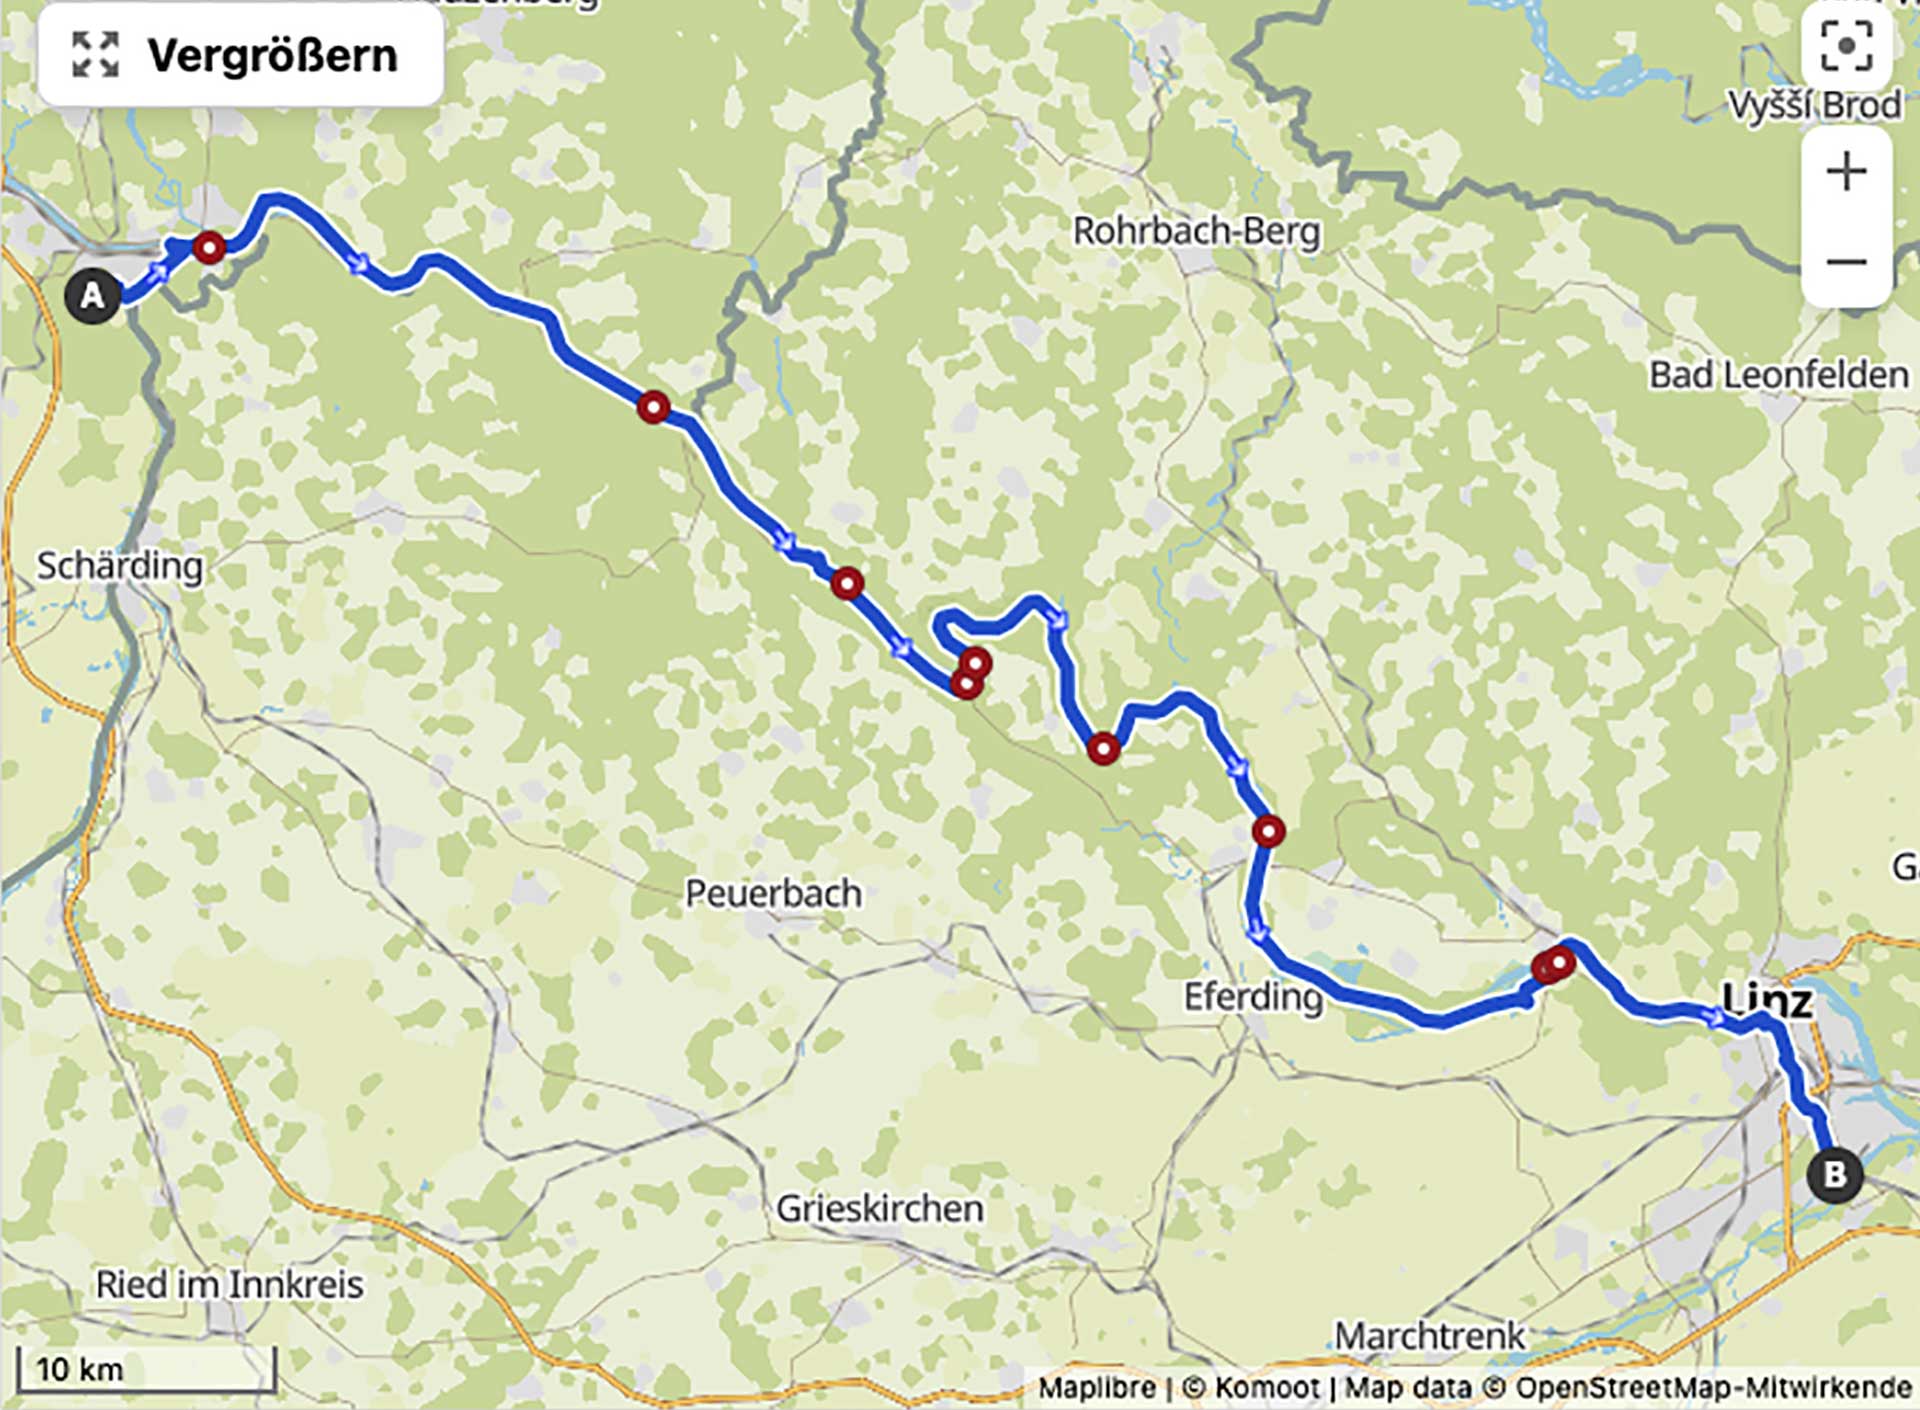 Route Passau - Linz